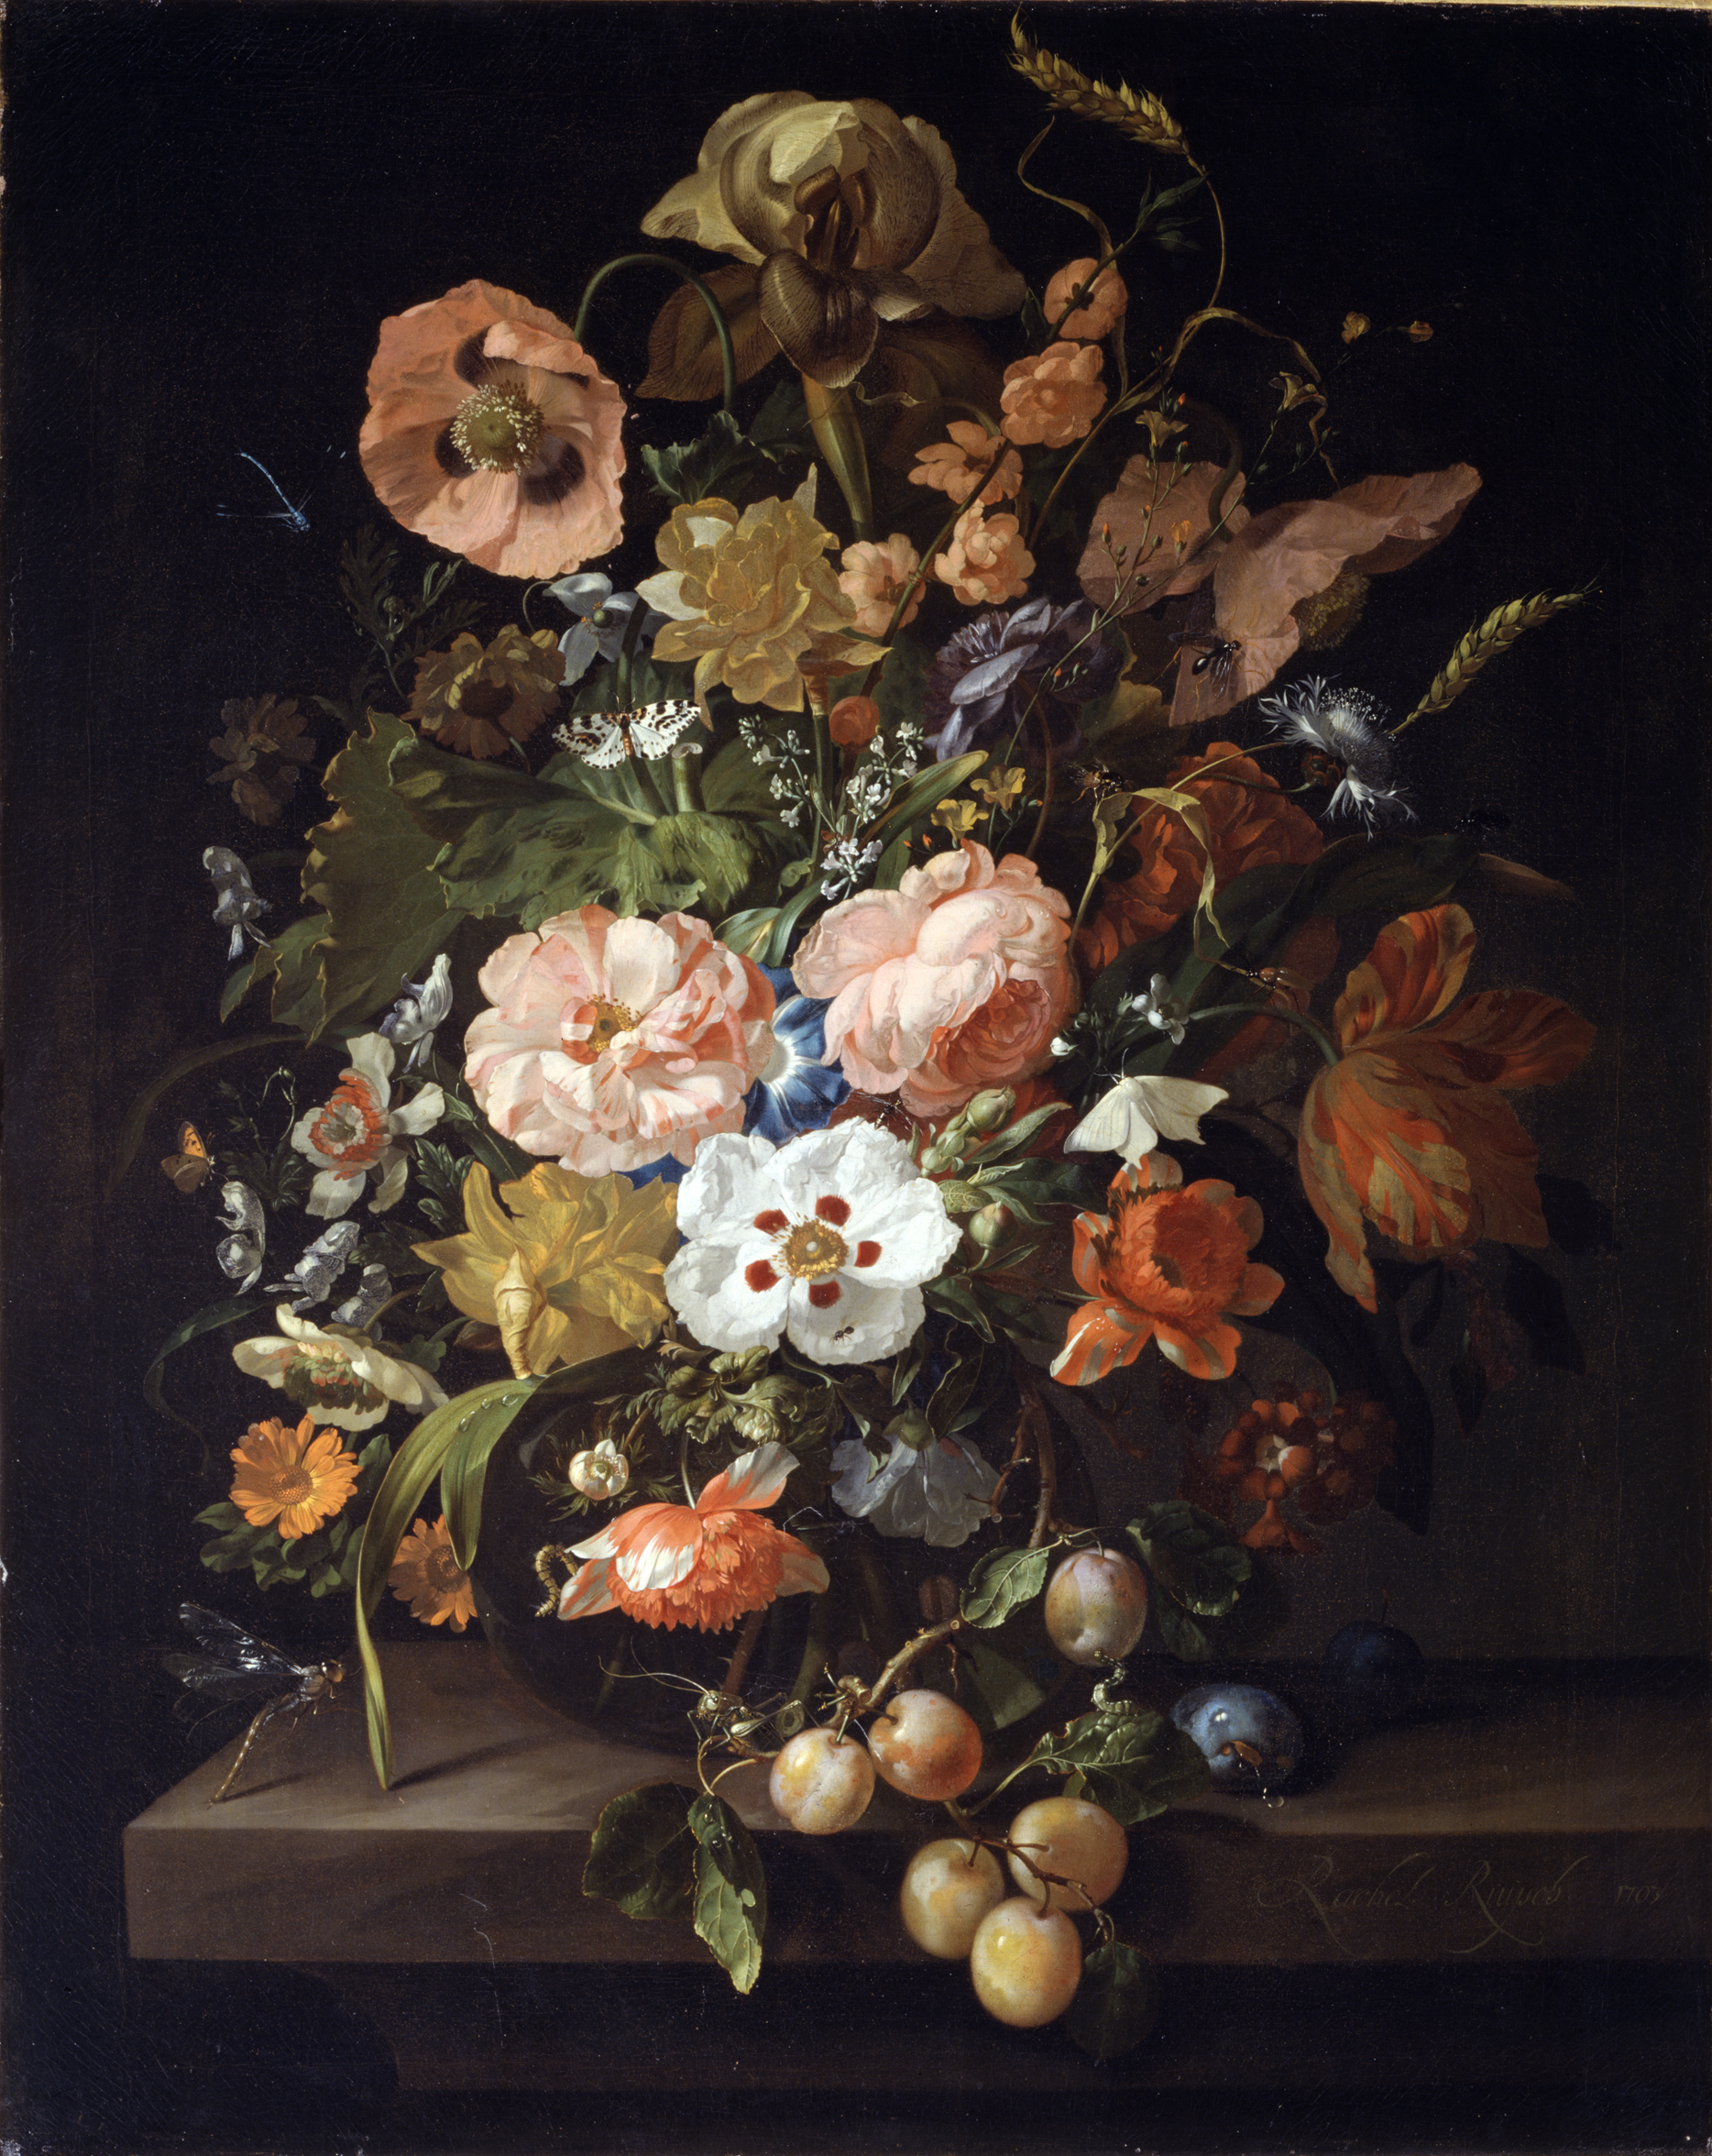 Meyve ve Çiçeklerle Natürmort by Rachel Ruysch - 1703 